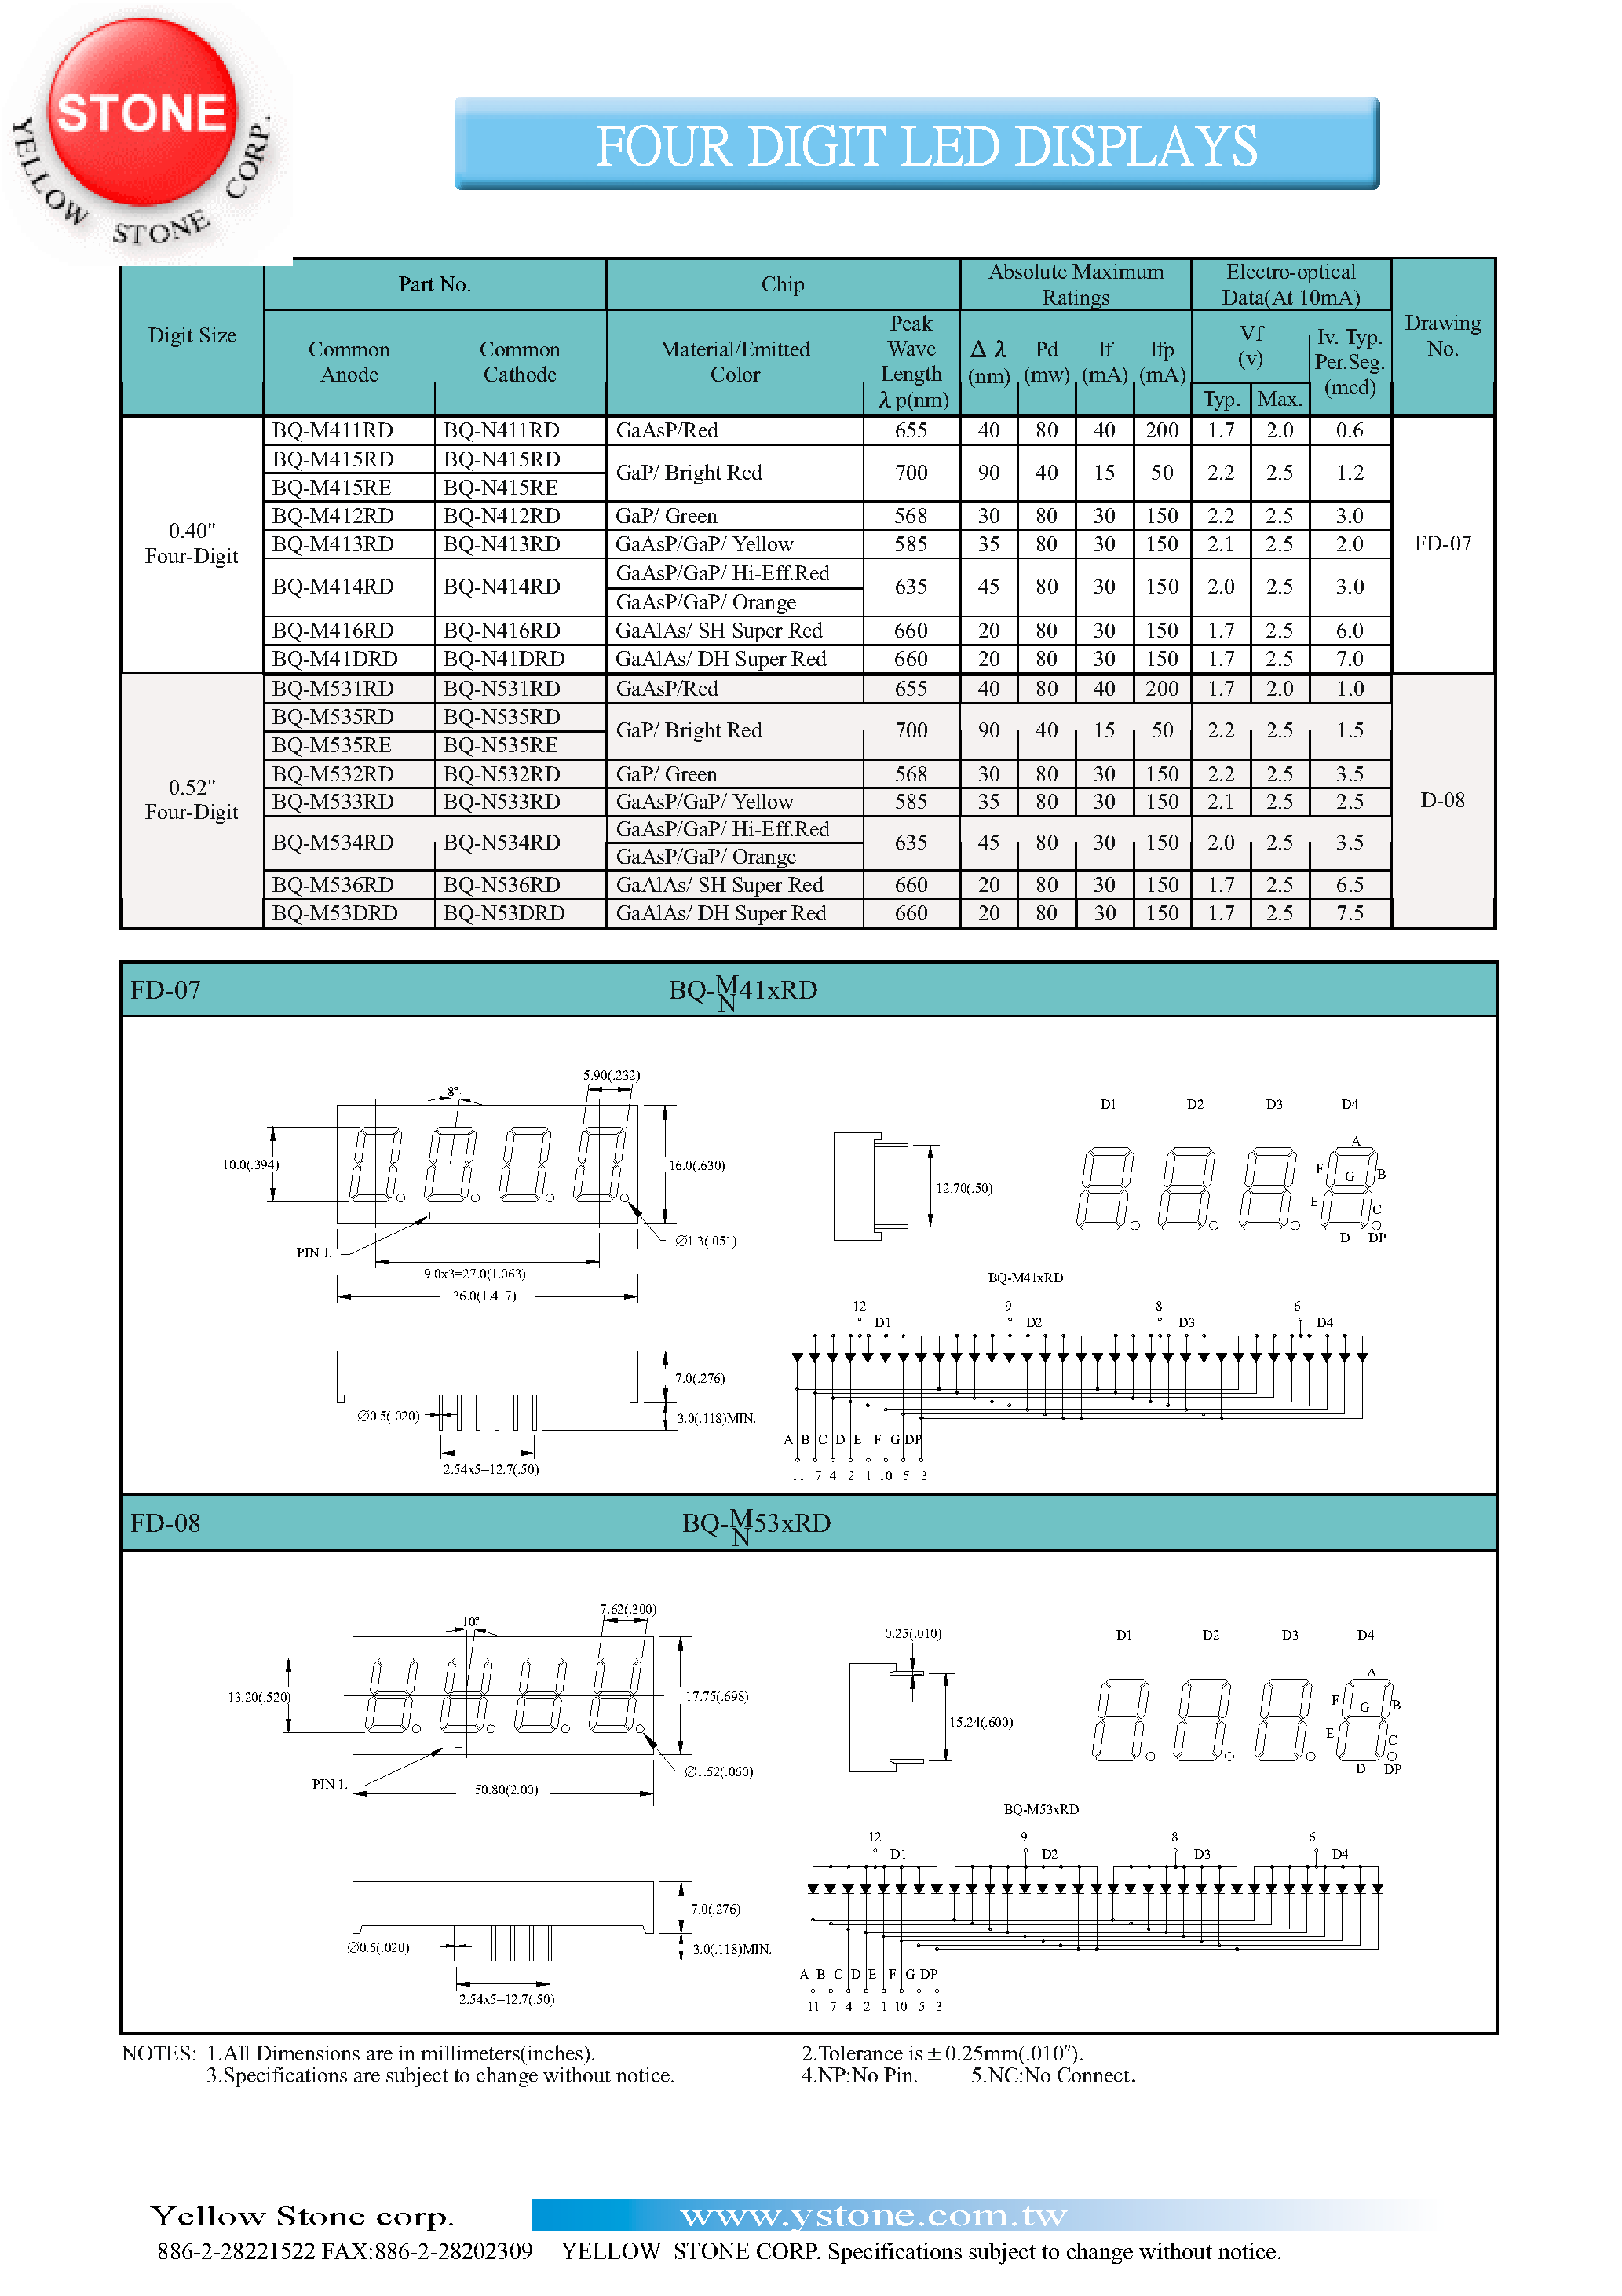 Datasheet BQ-M415RE - FOUR DIGIT LED DISPLAYS page 1